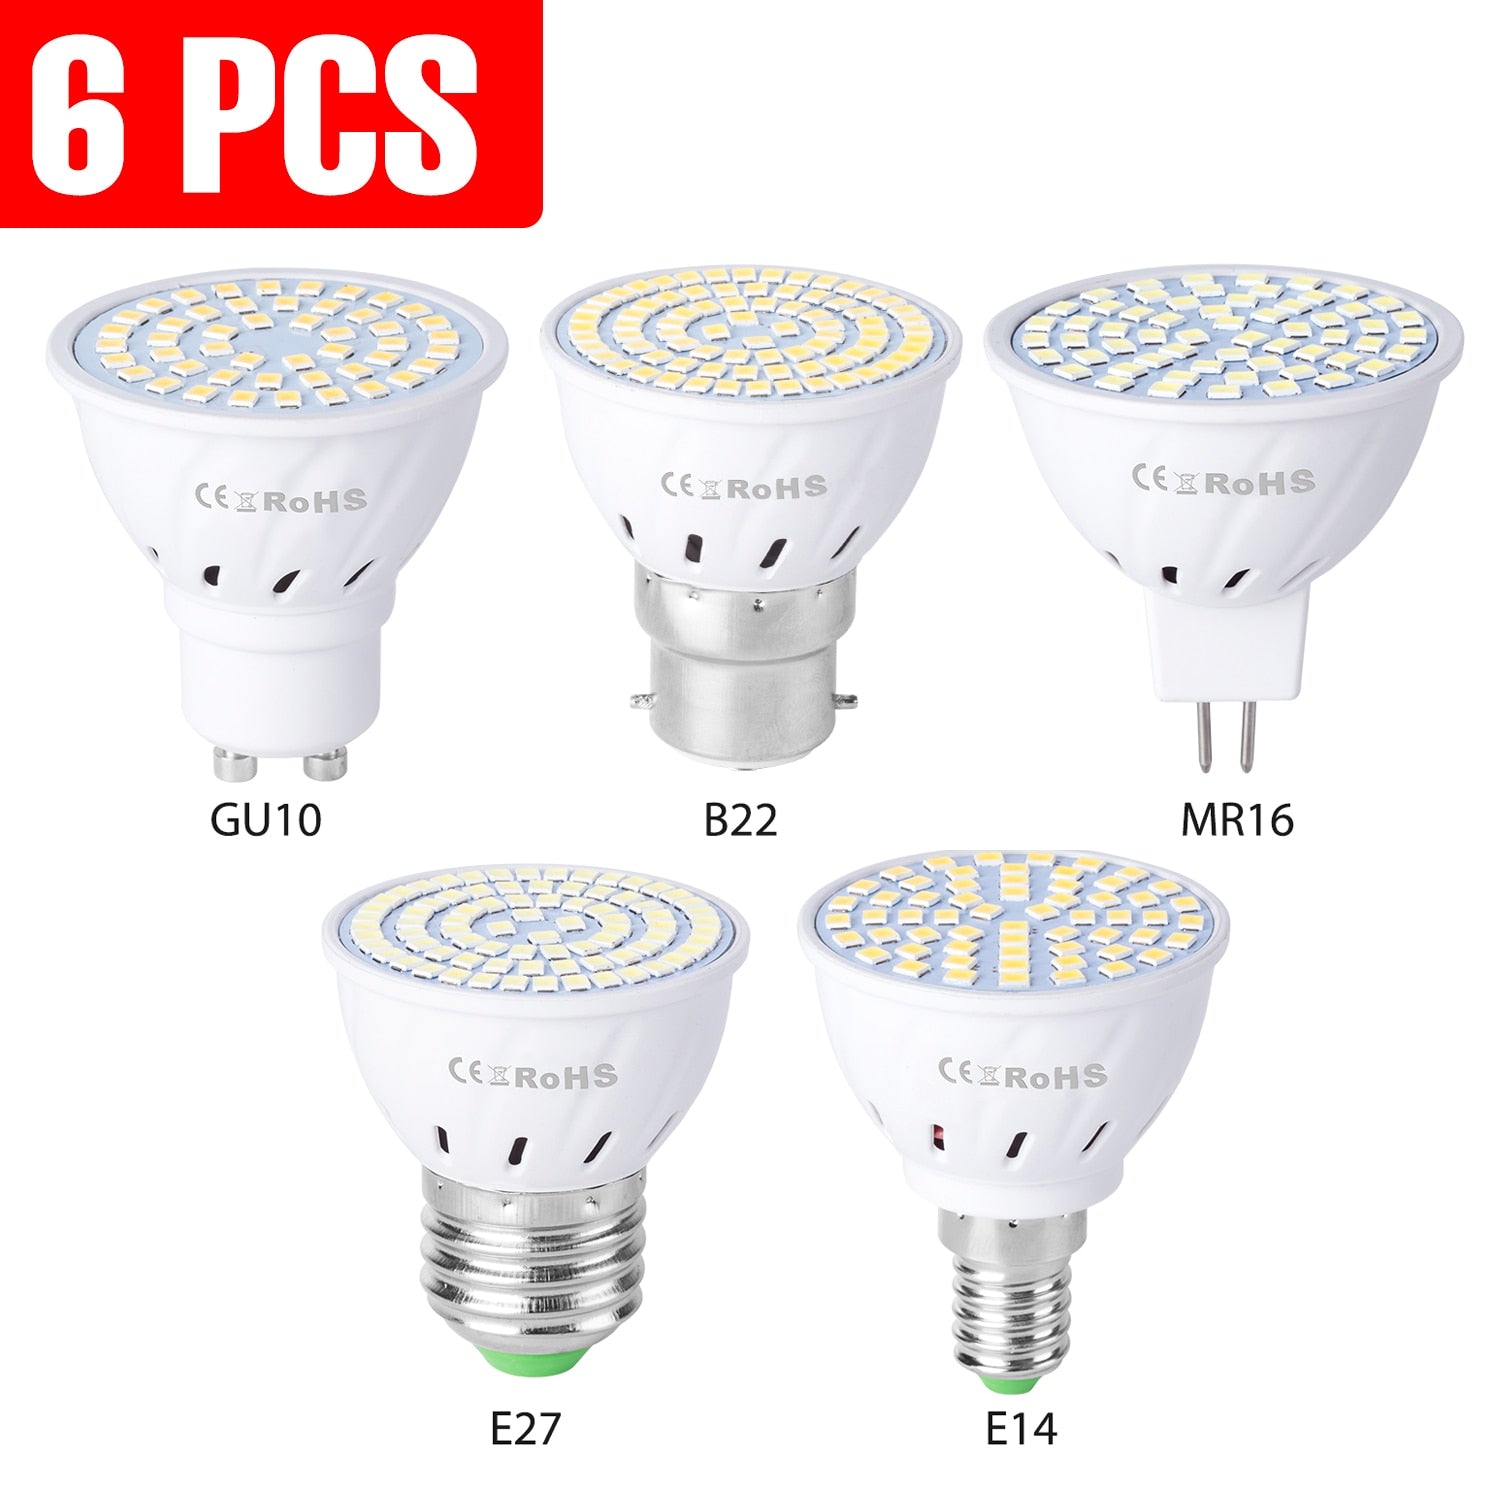 6PCS E27 Led Bulb GU10 Led Lamp E14 Corn Bulb 220V Spot Light MR16 Lampasa Led For Ampoule GU5.3 Home Spotlight B22 4W 6W 8W